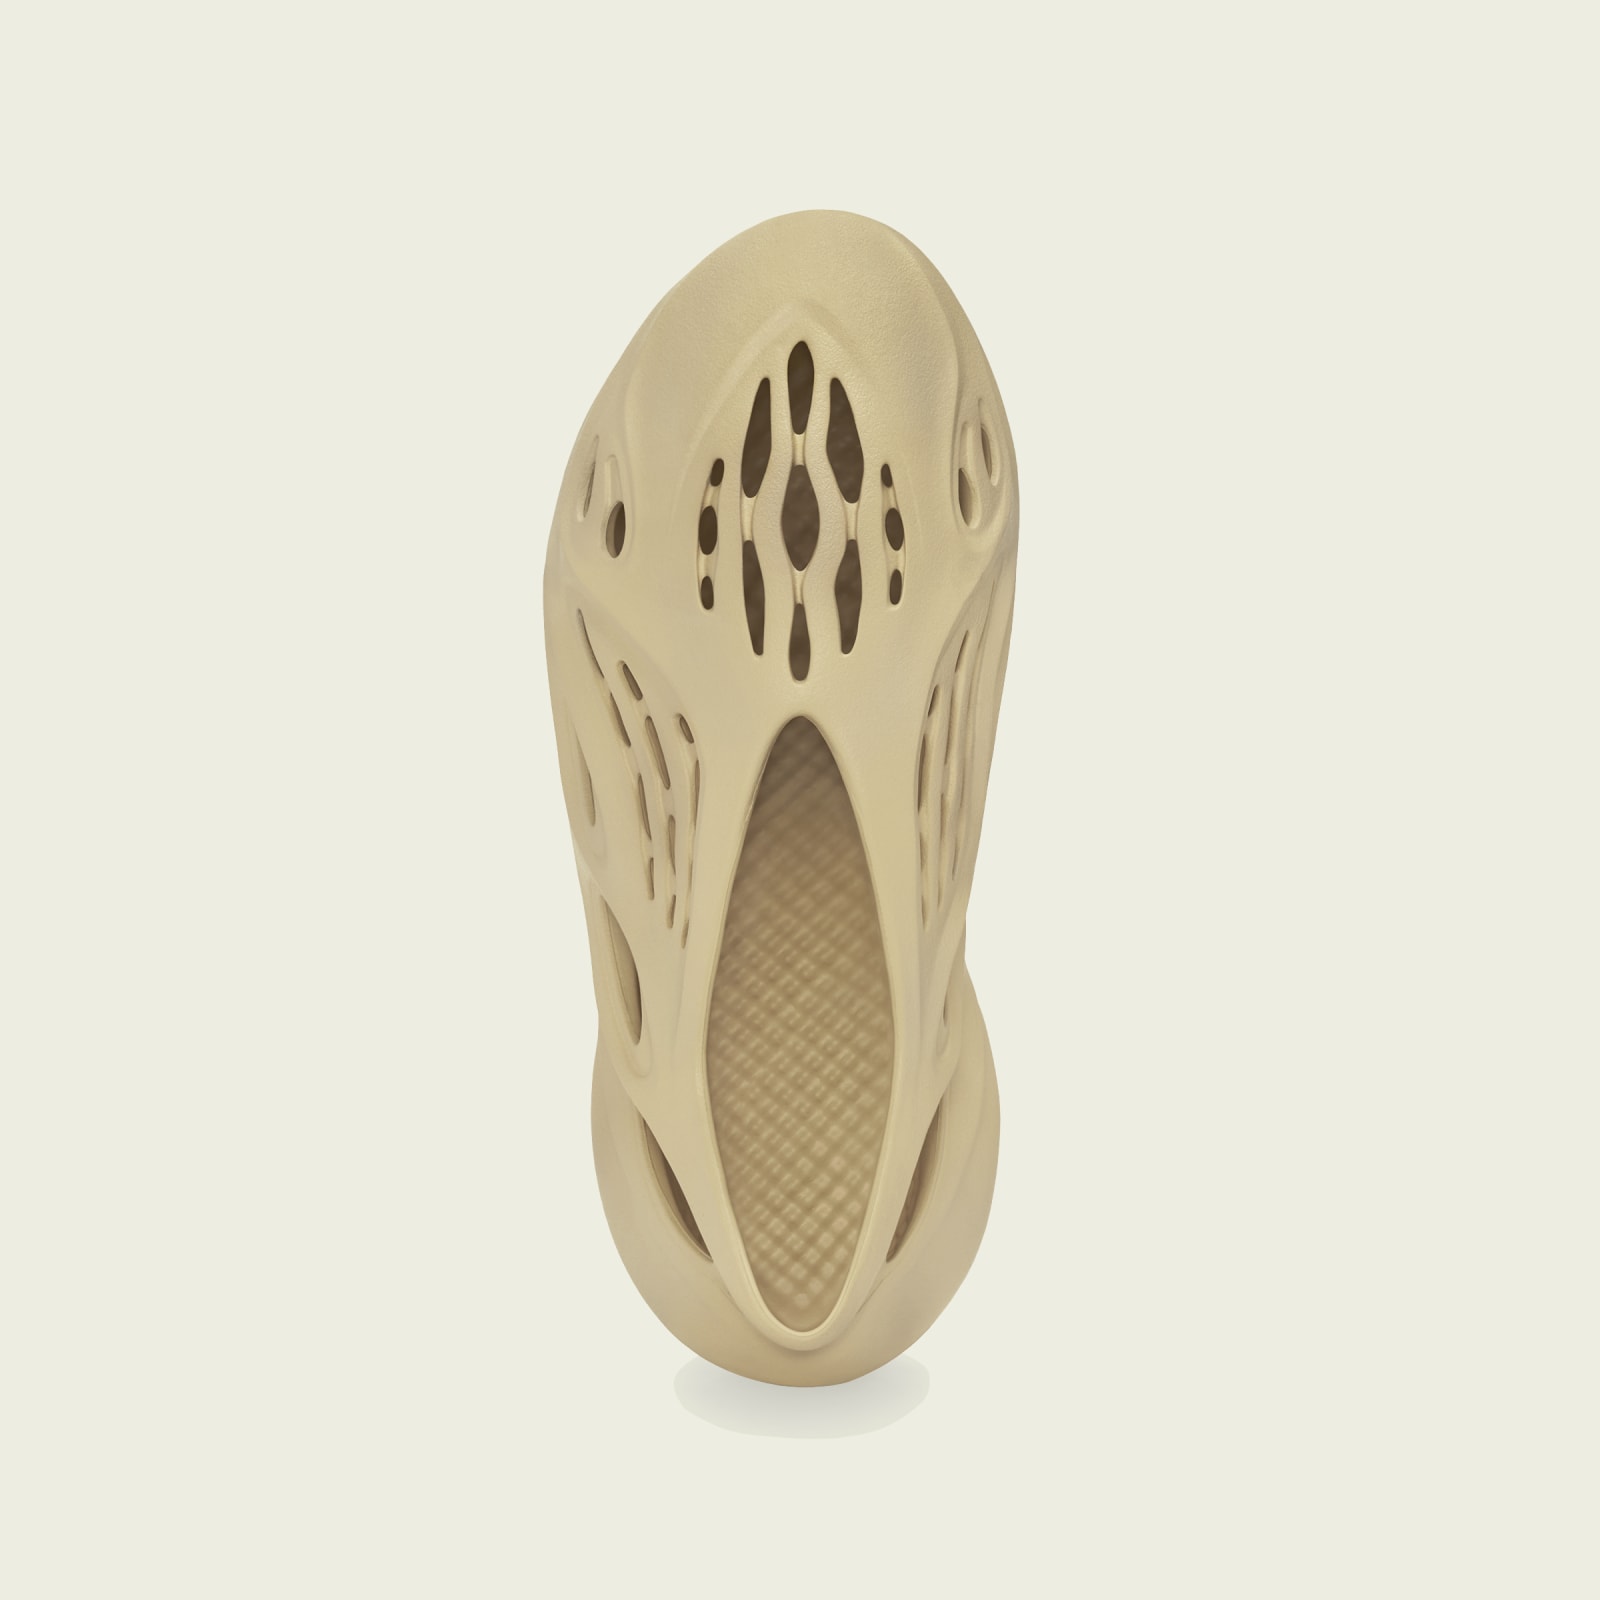 Adidas Yeezy
Foam Runner
« Desert Sand »